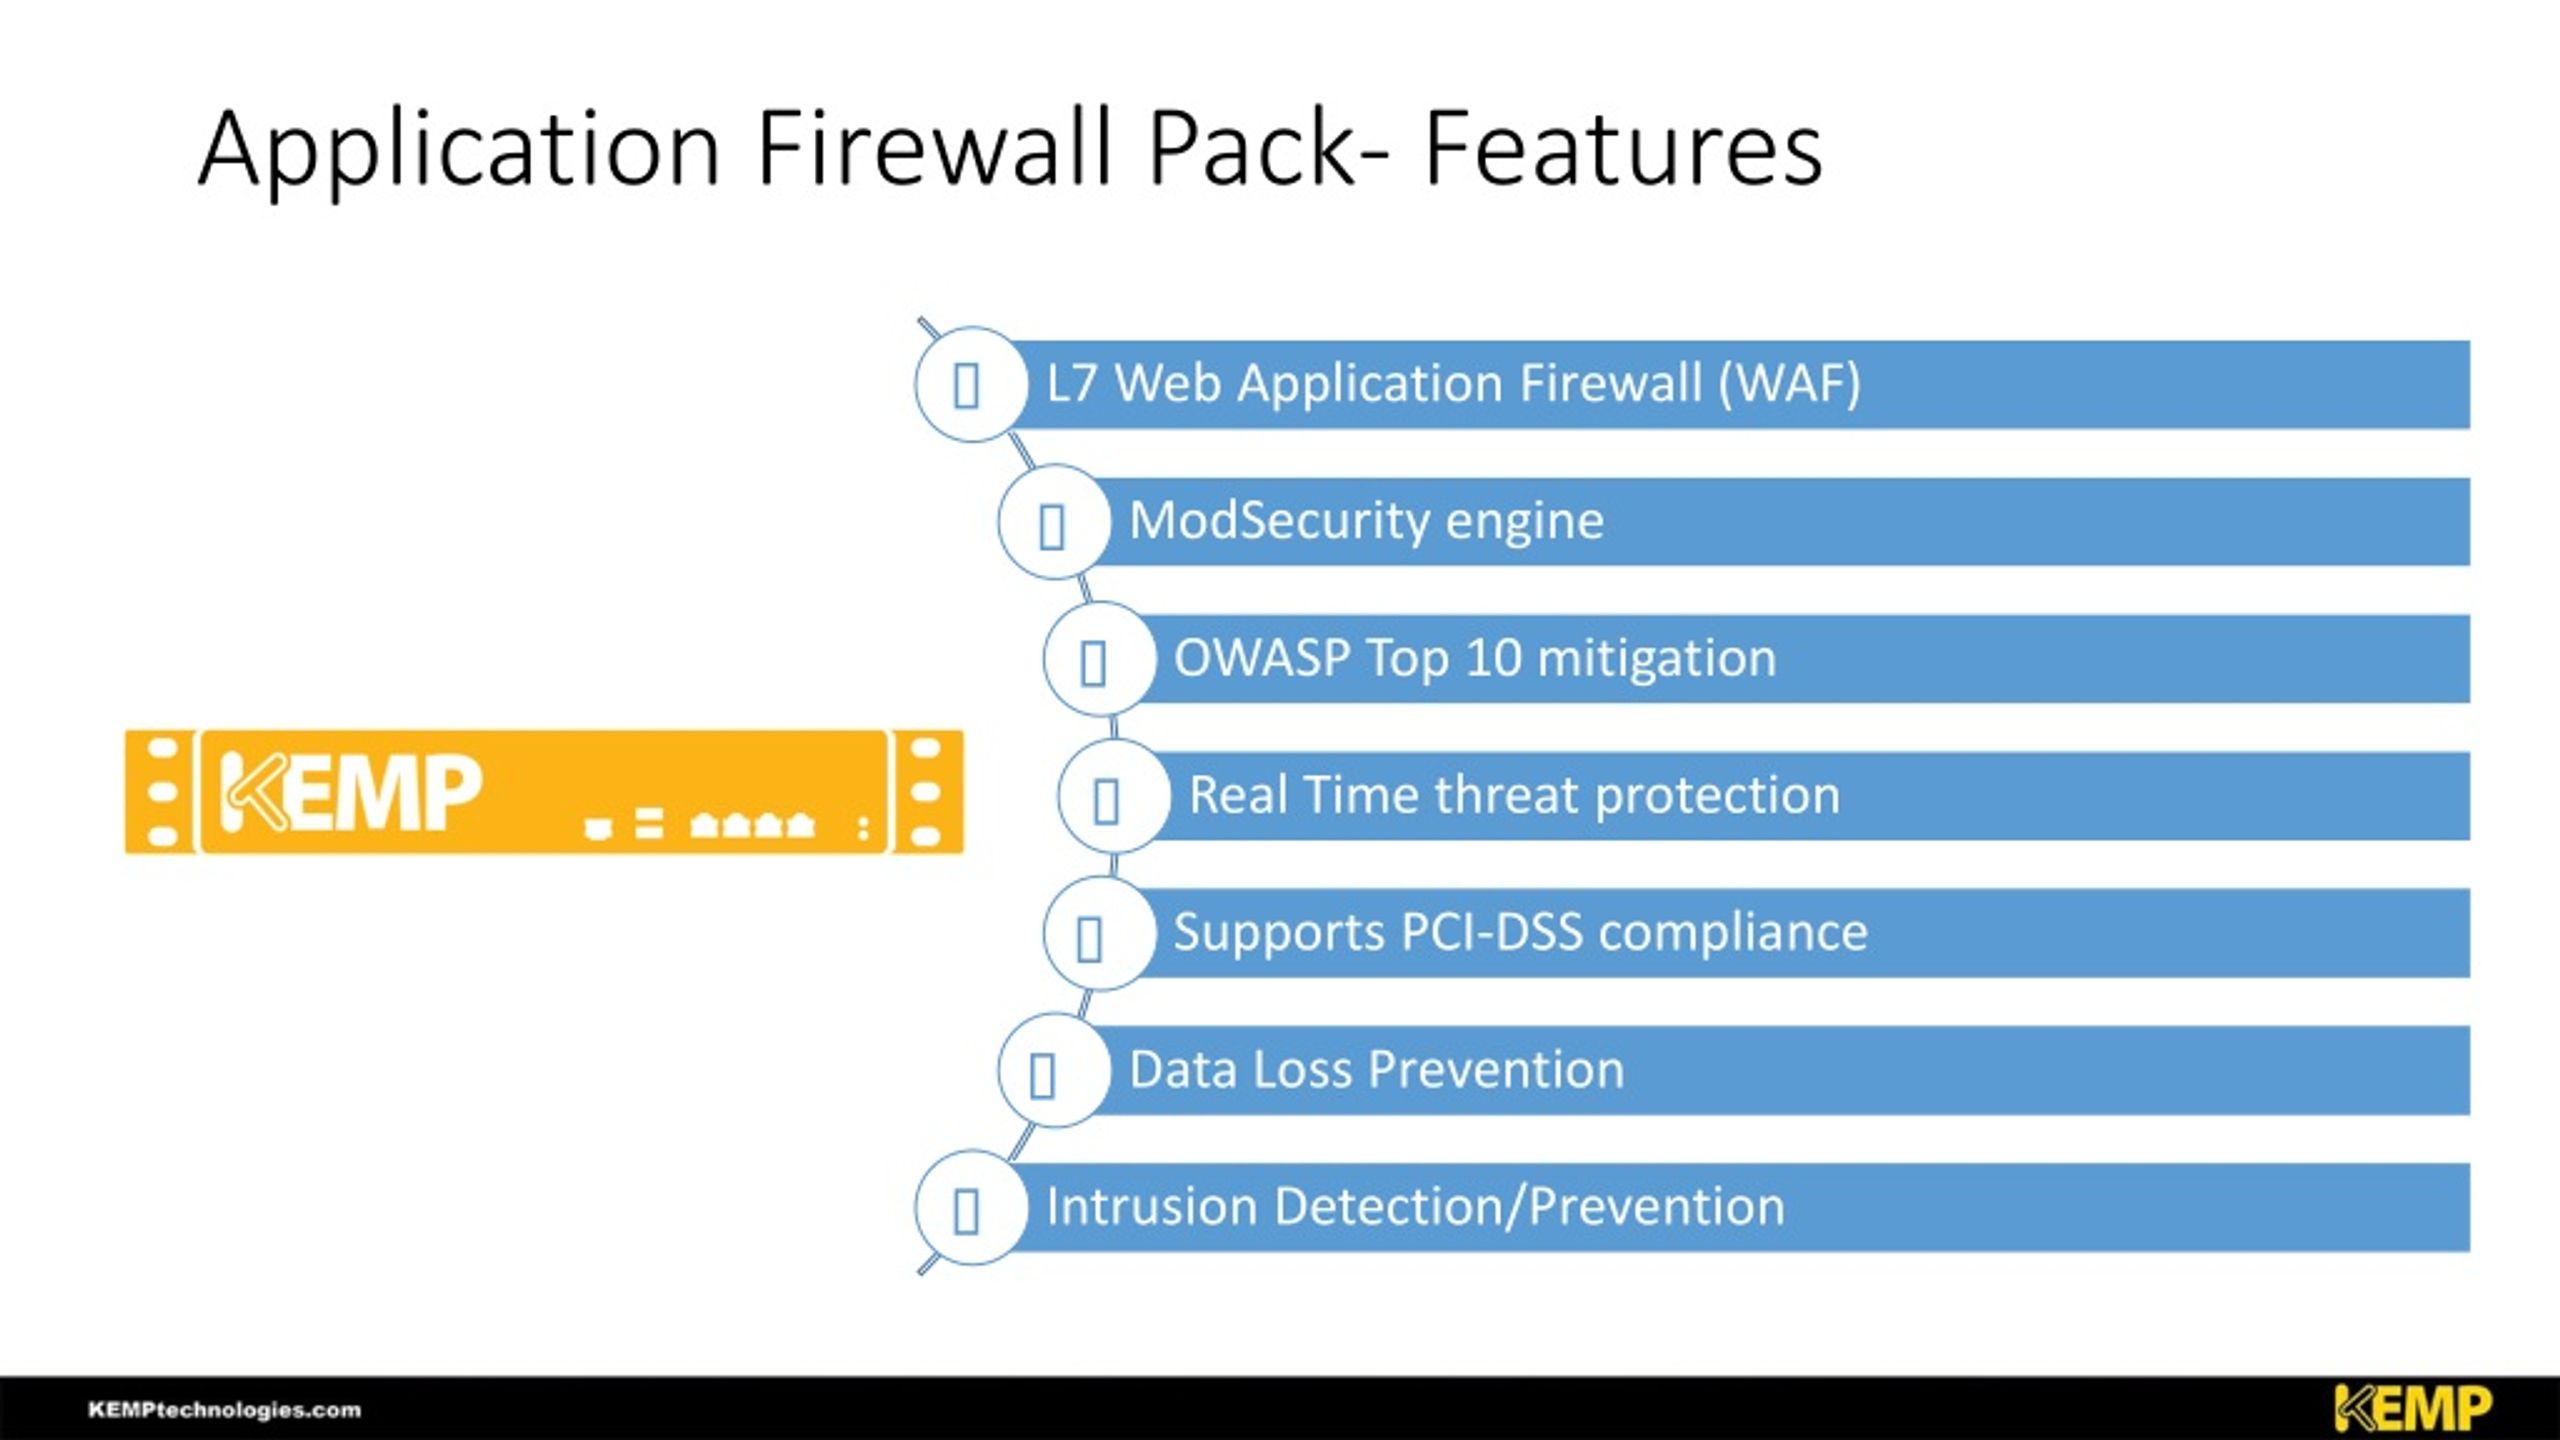 WAF – Web Application Firewall 101 - Load Balancers - Kemp